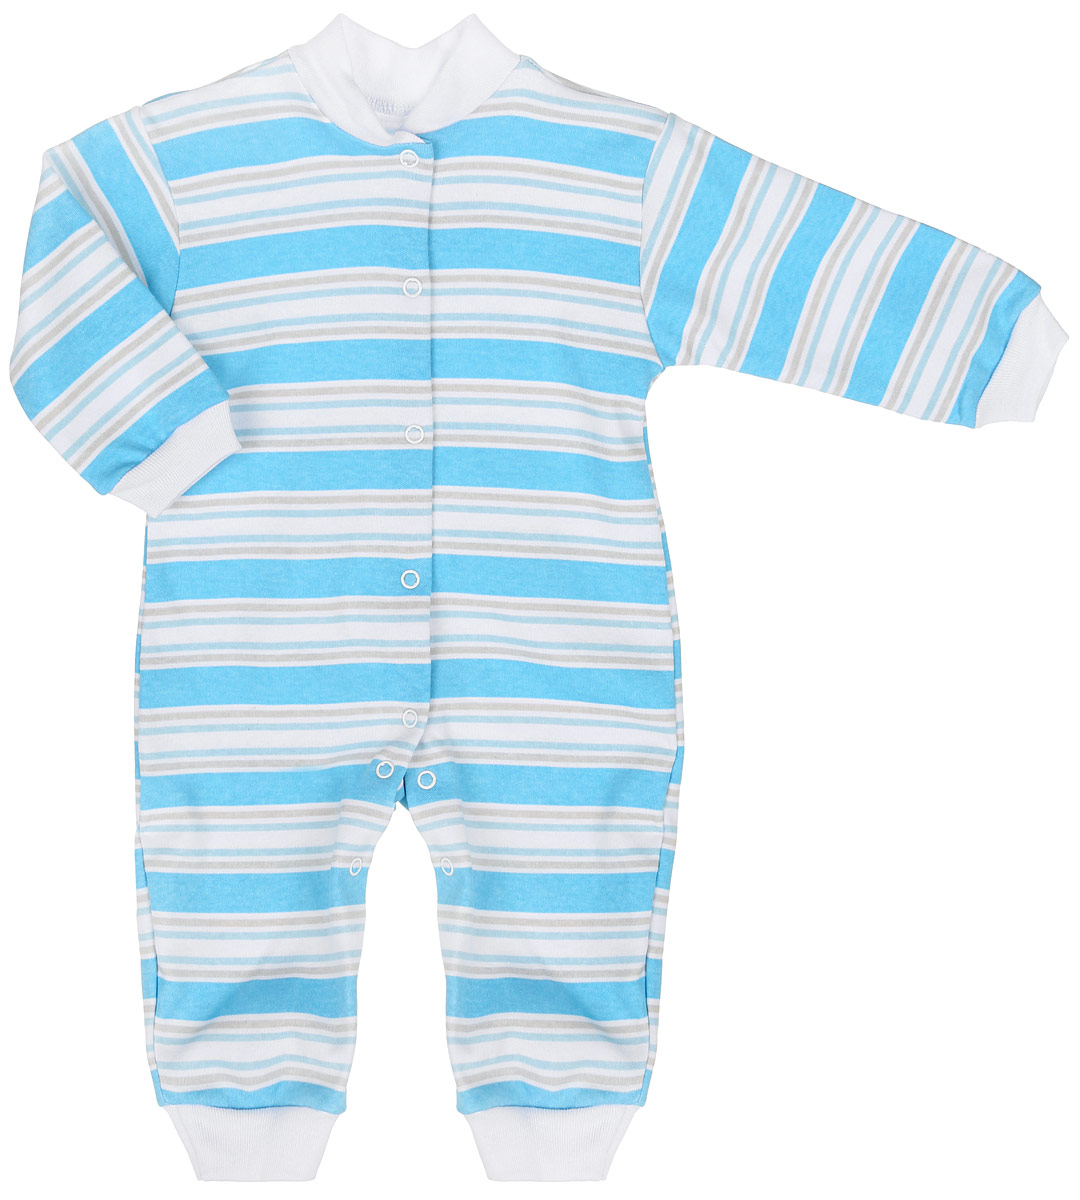 Комбинезон для мальчика Трон-плюс, цвет: белый, голубой, светло-серый. 5813_ОЗ14_полоски. Размер 80, 12 месяцев